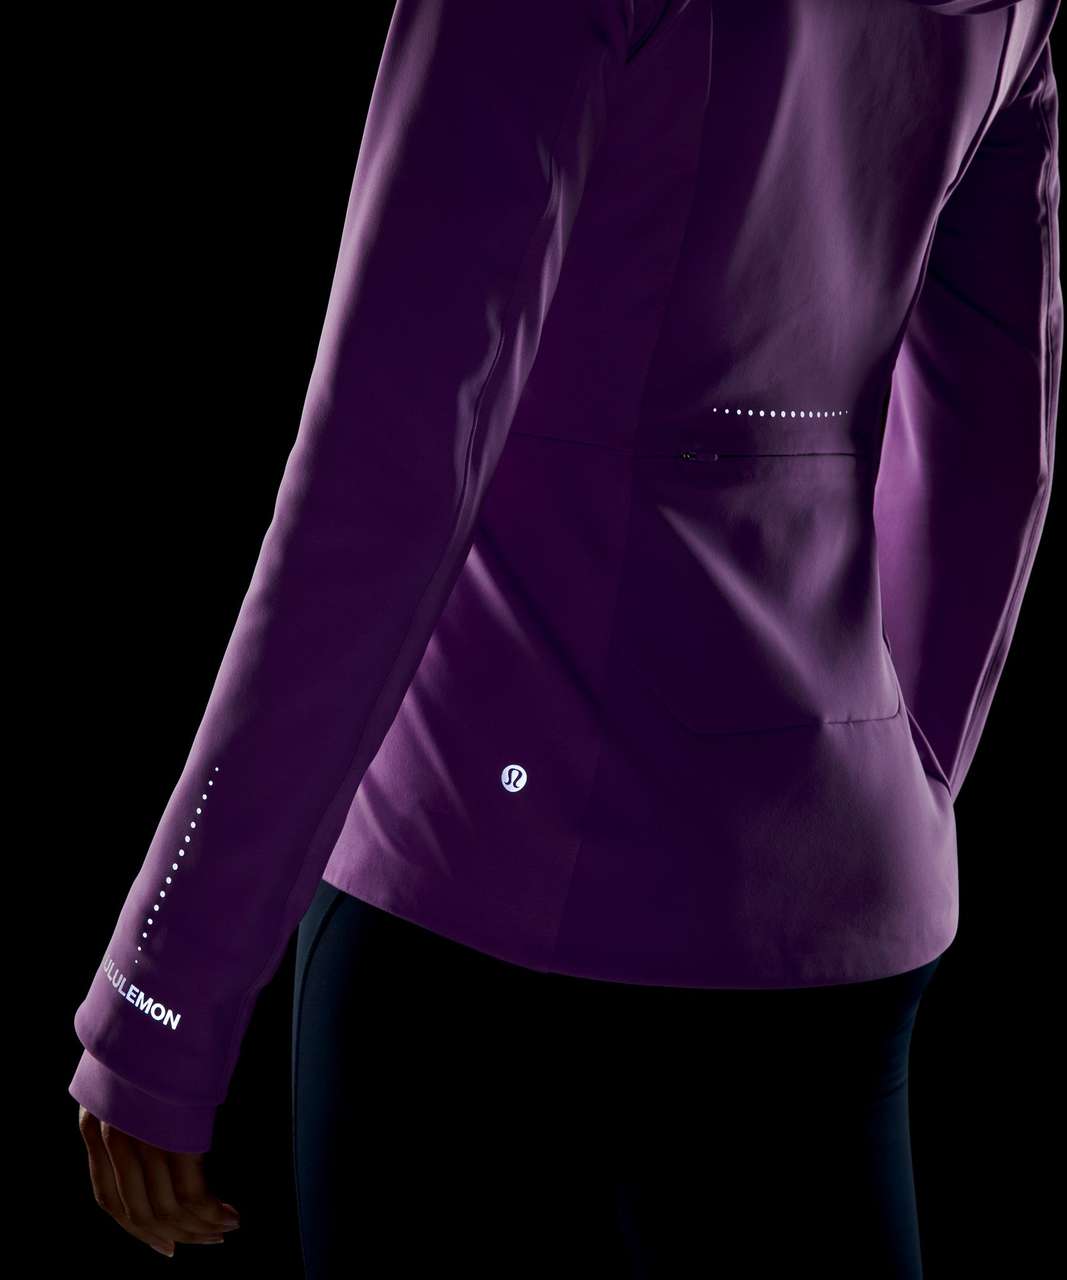 New Lululemon Cross Chill Jacket RepelShell size 6 Sheer Blue-LW4BOHS SHRB